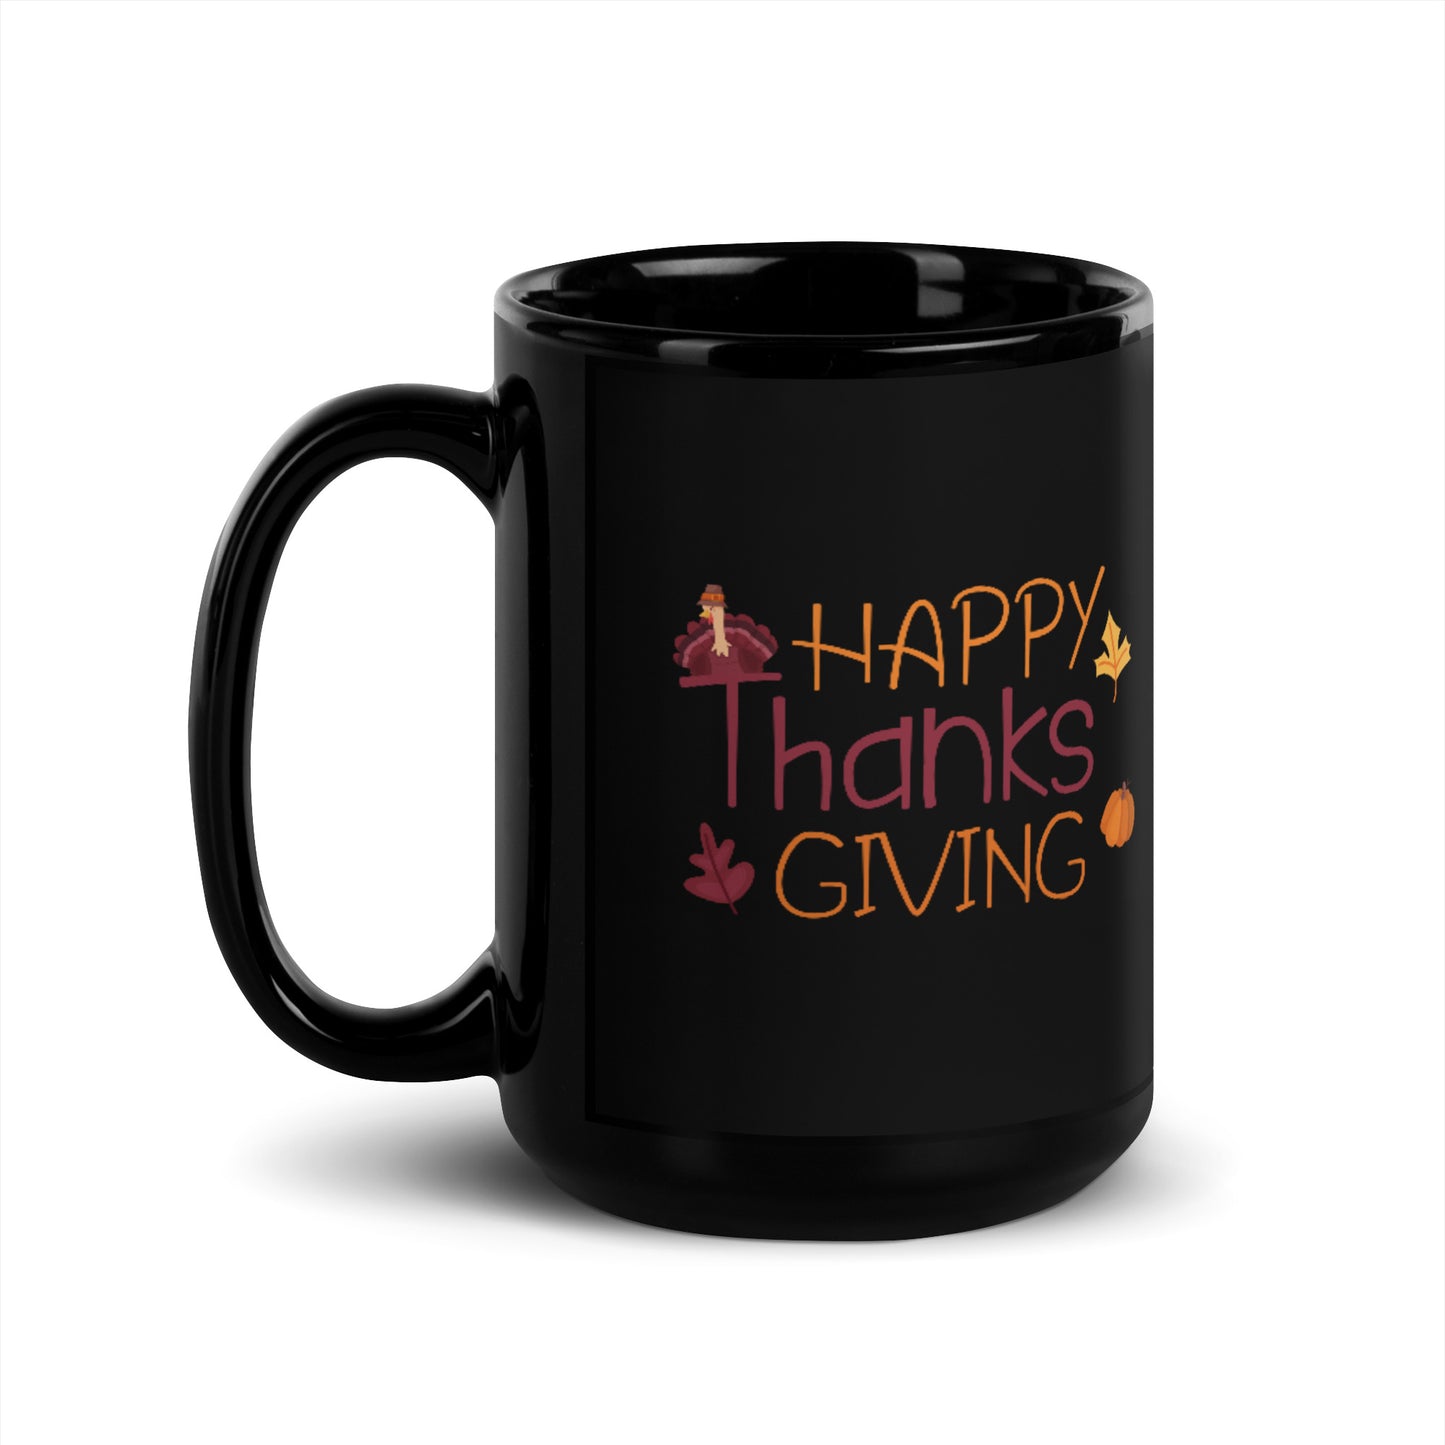 Happy Thanksgiving Black Glossy Mug